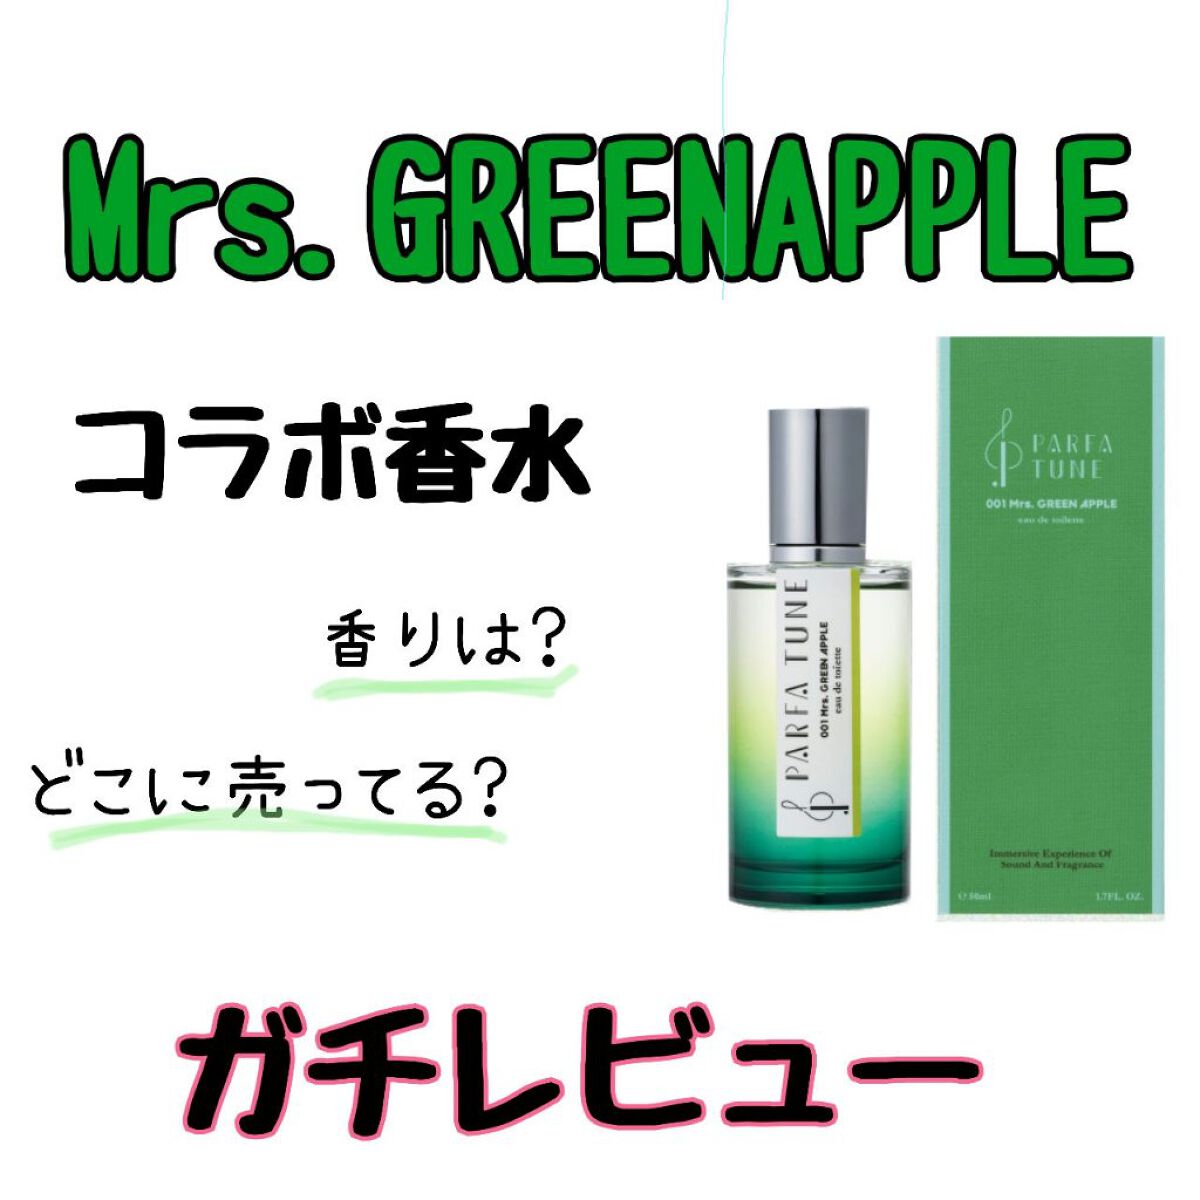 ルカリ ミセスグリーンアップル 香水 パルファチューオードトワレ 50ml ×2 された